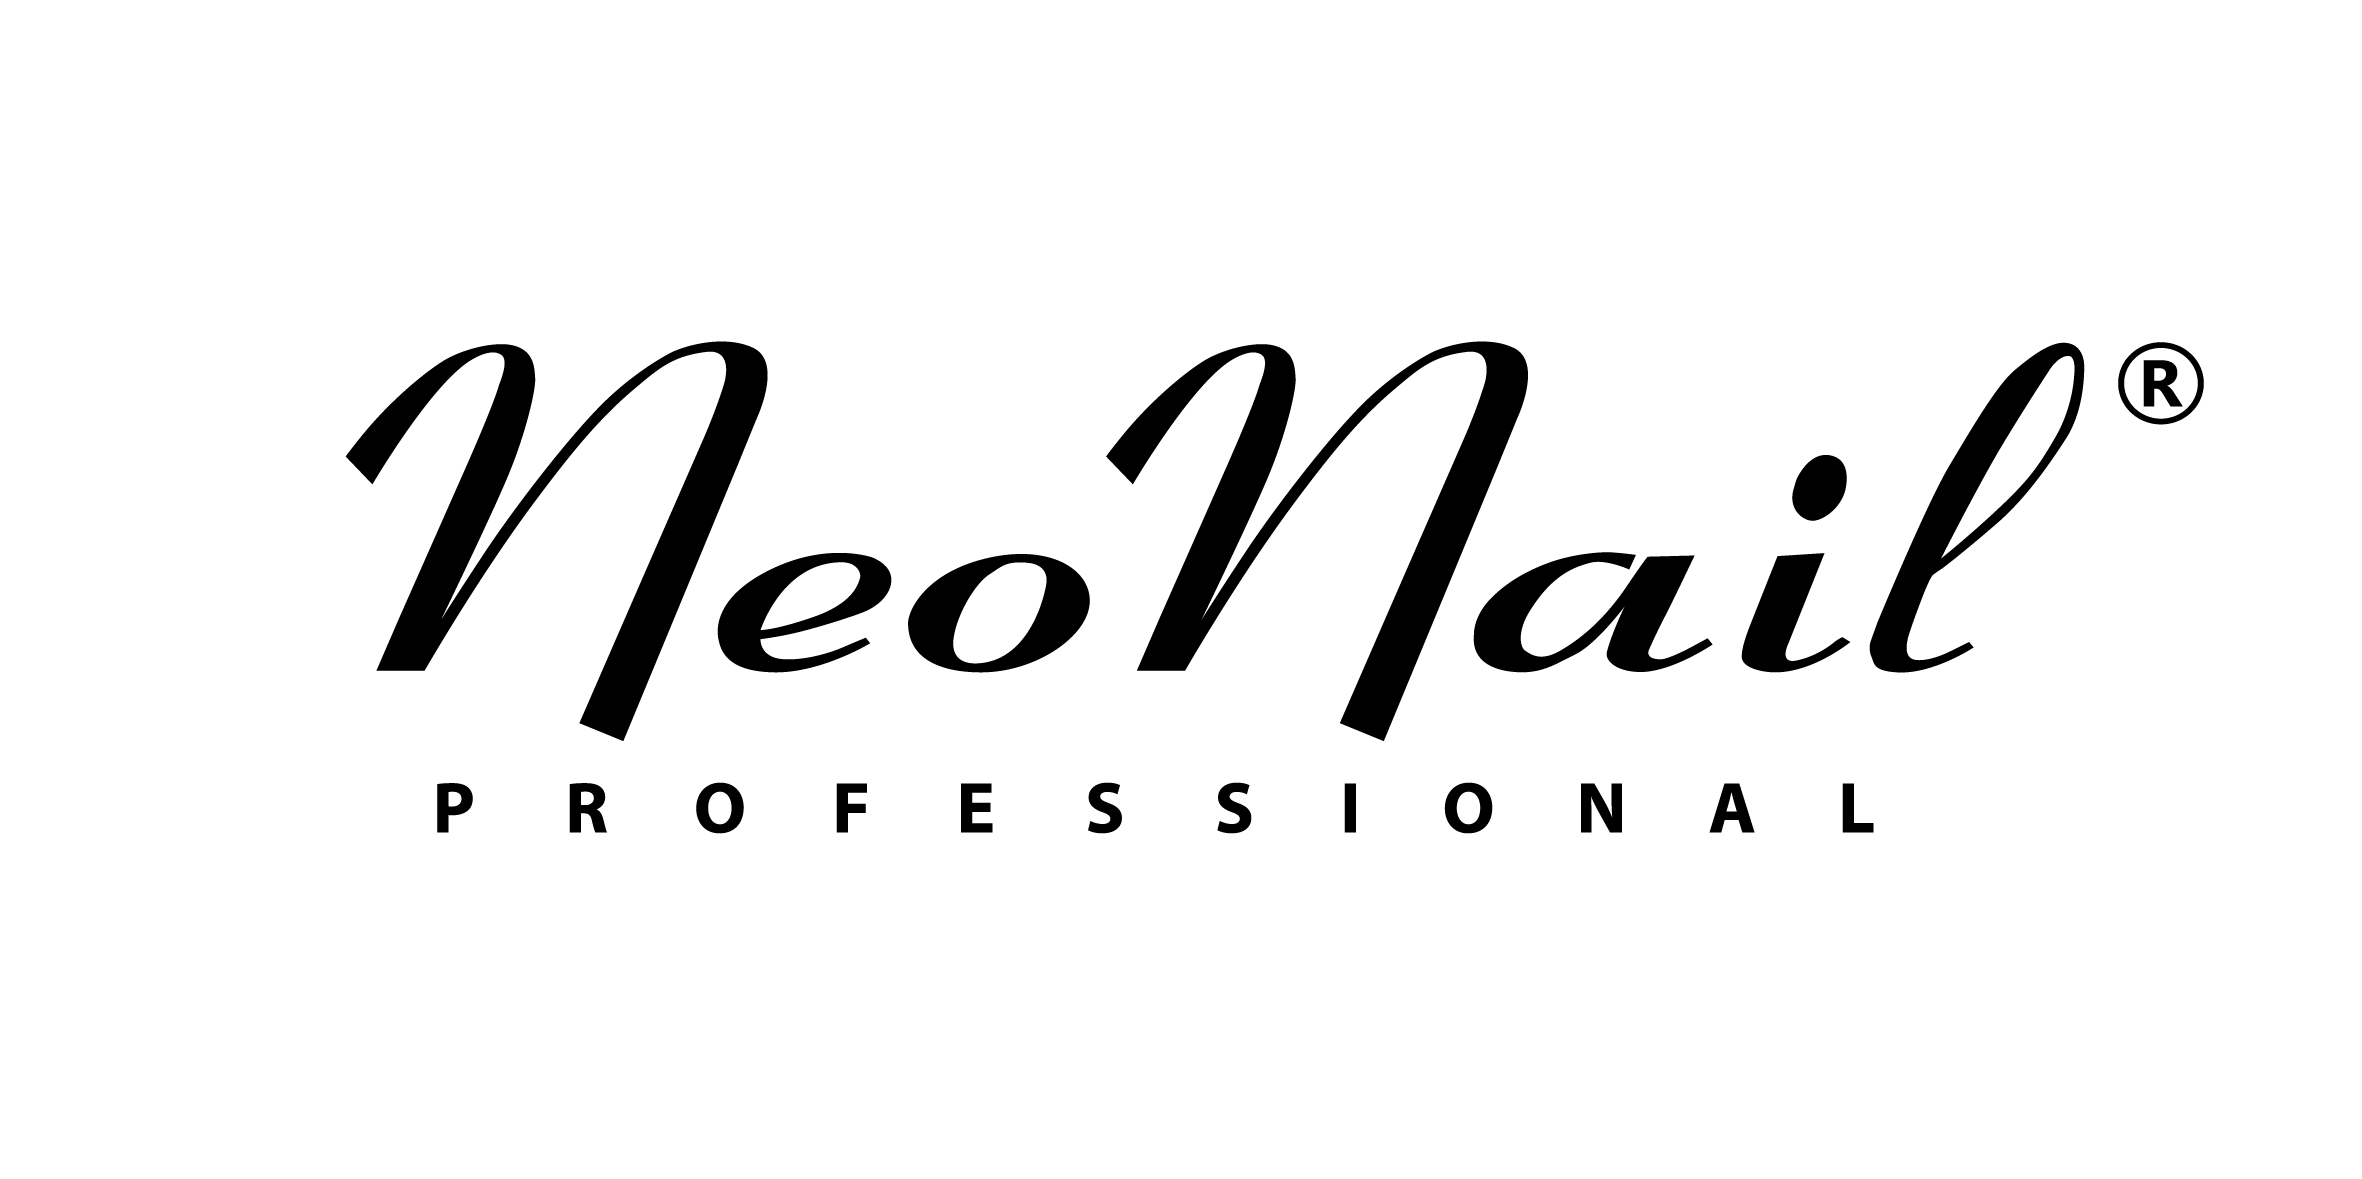 neonail_logo